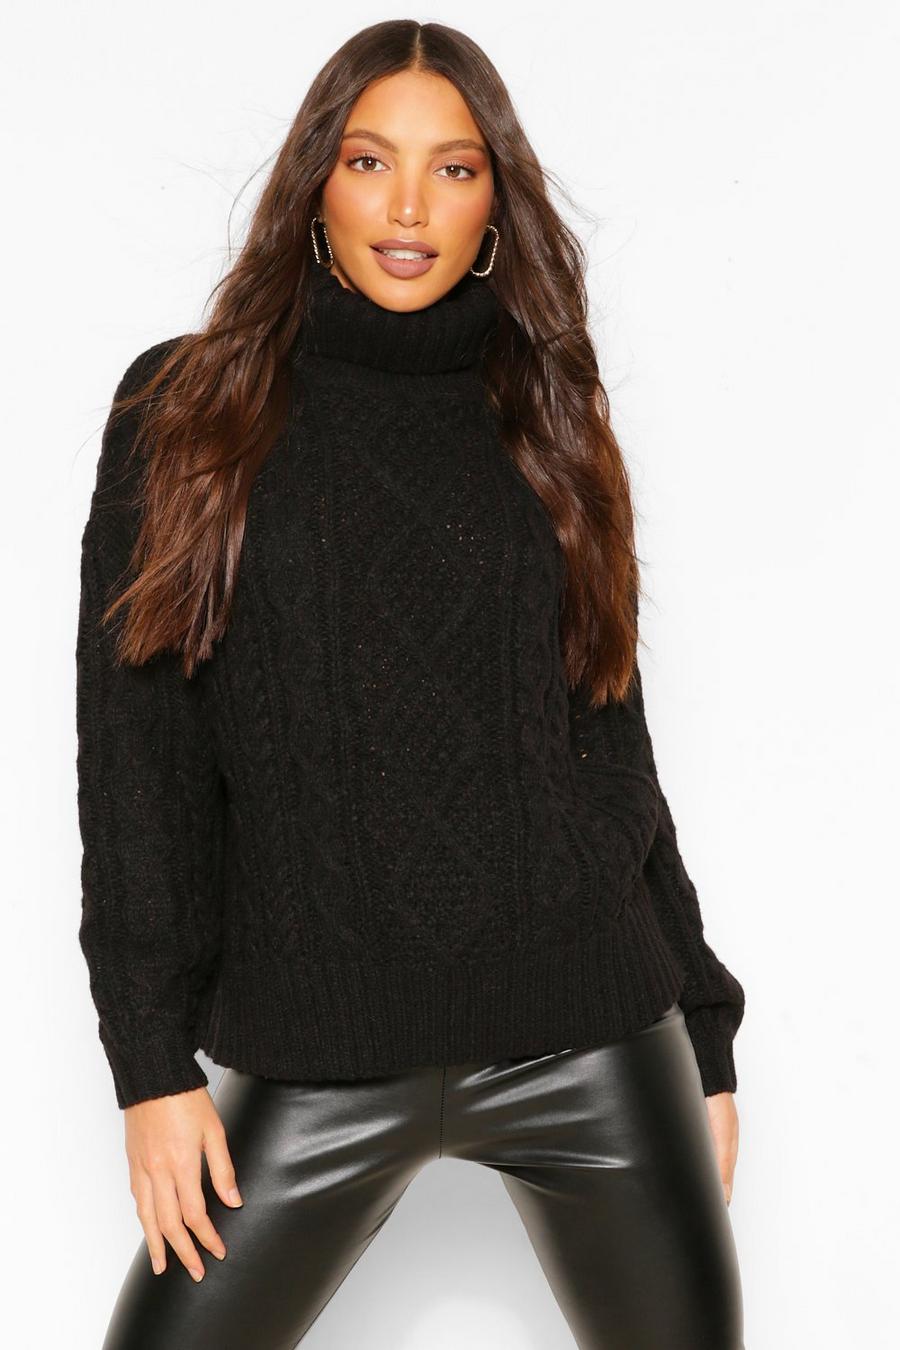 שחור סוודר עבה בסריגת צמות עם צווארון גבוה לנשים גבוהות image number 1